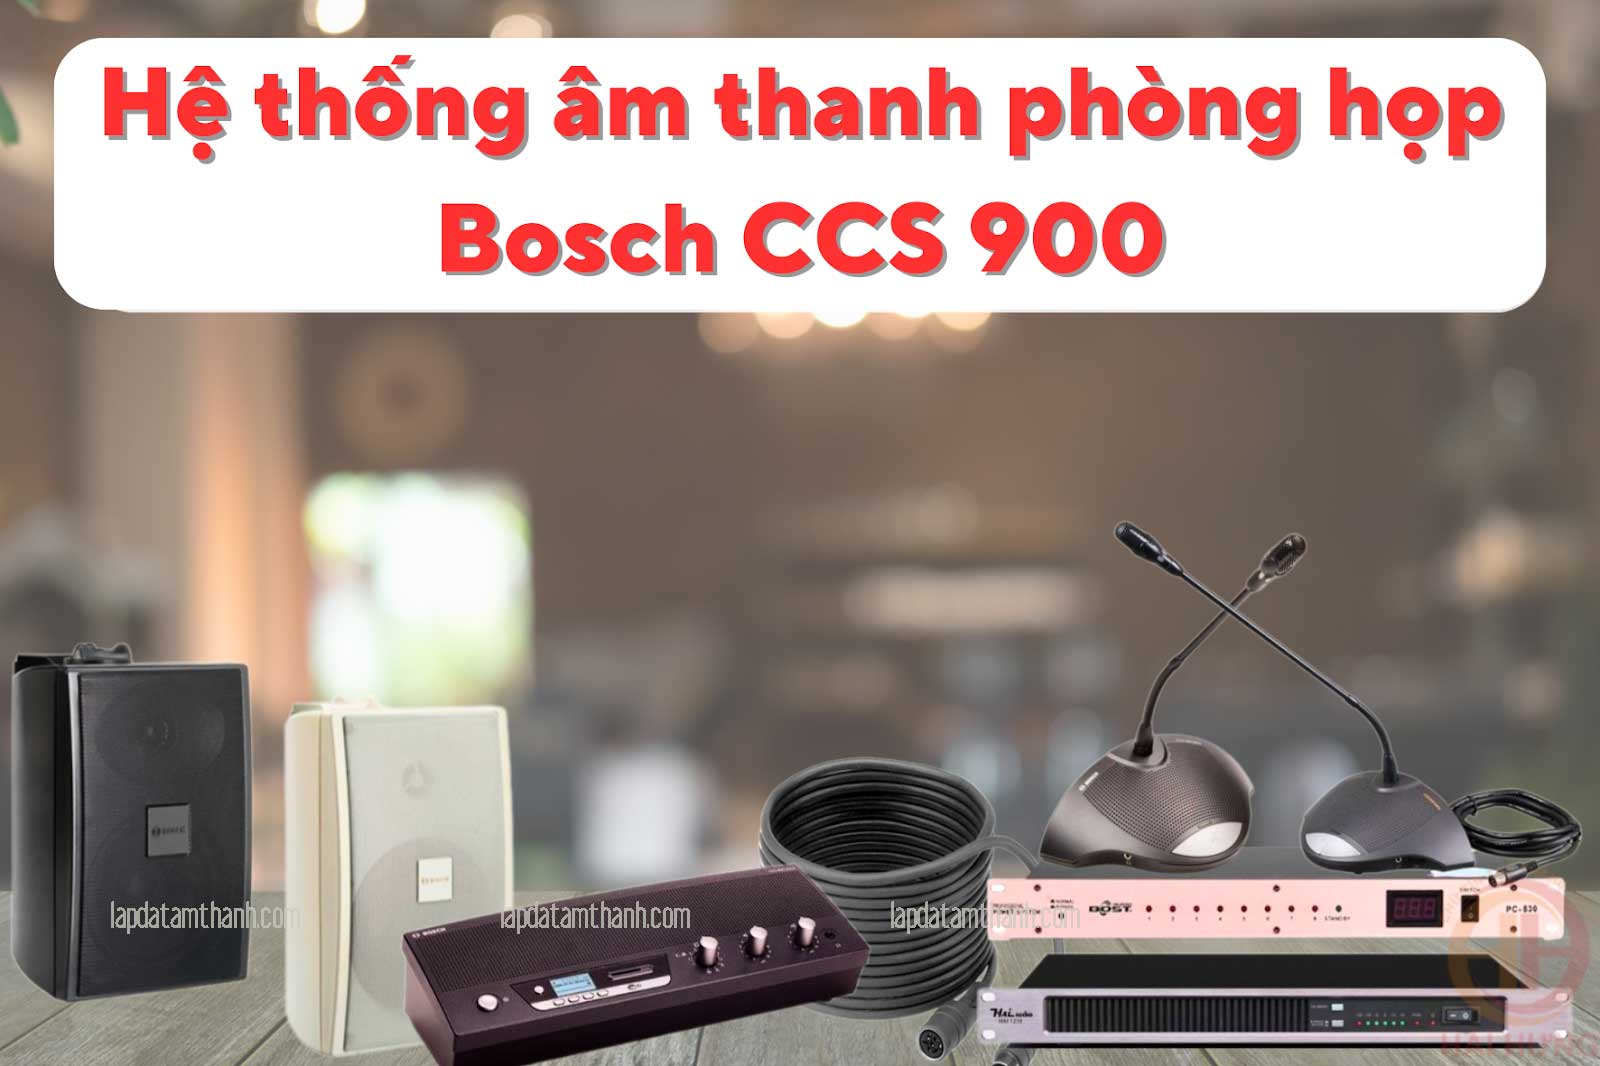 Hệ thống âm thanh phòng họp Bosch CCS 900